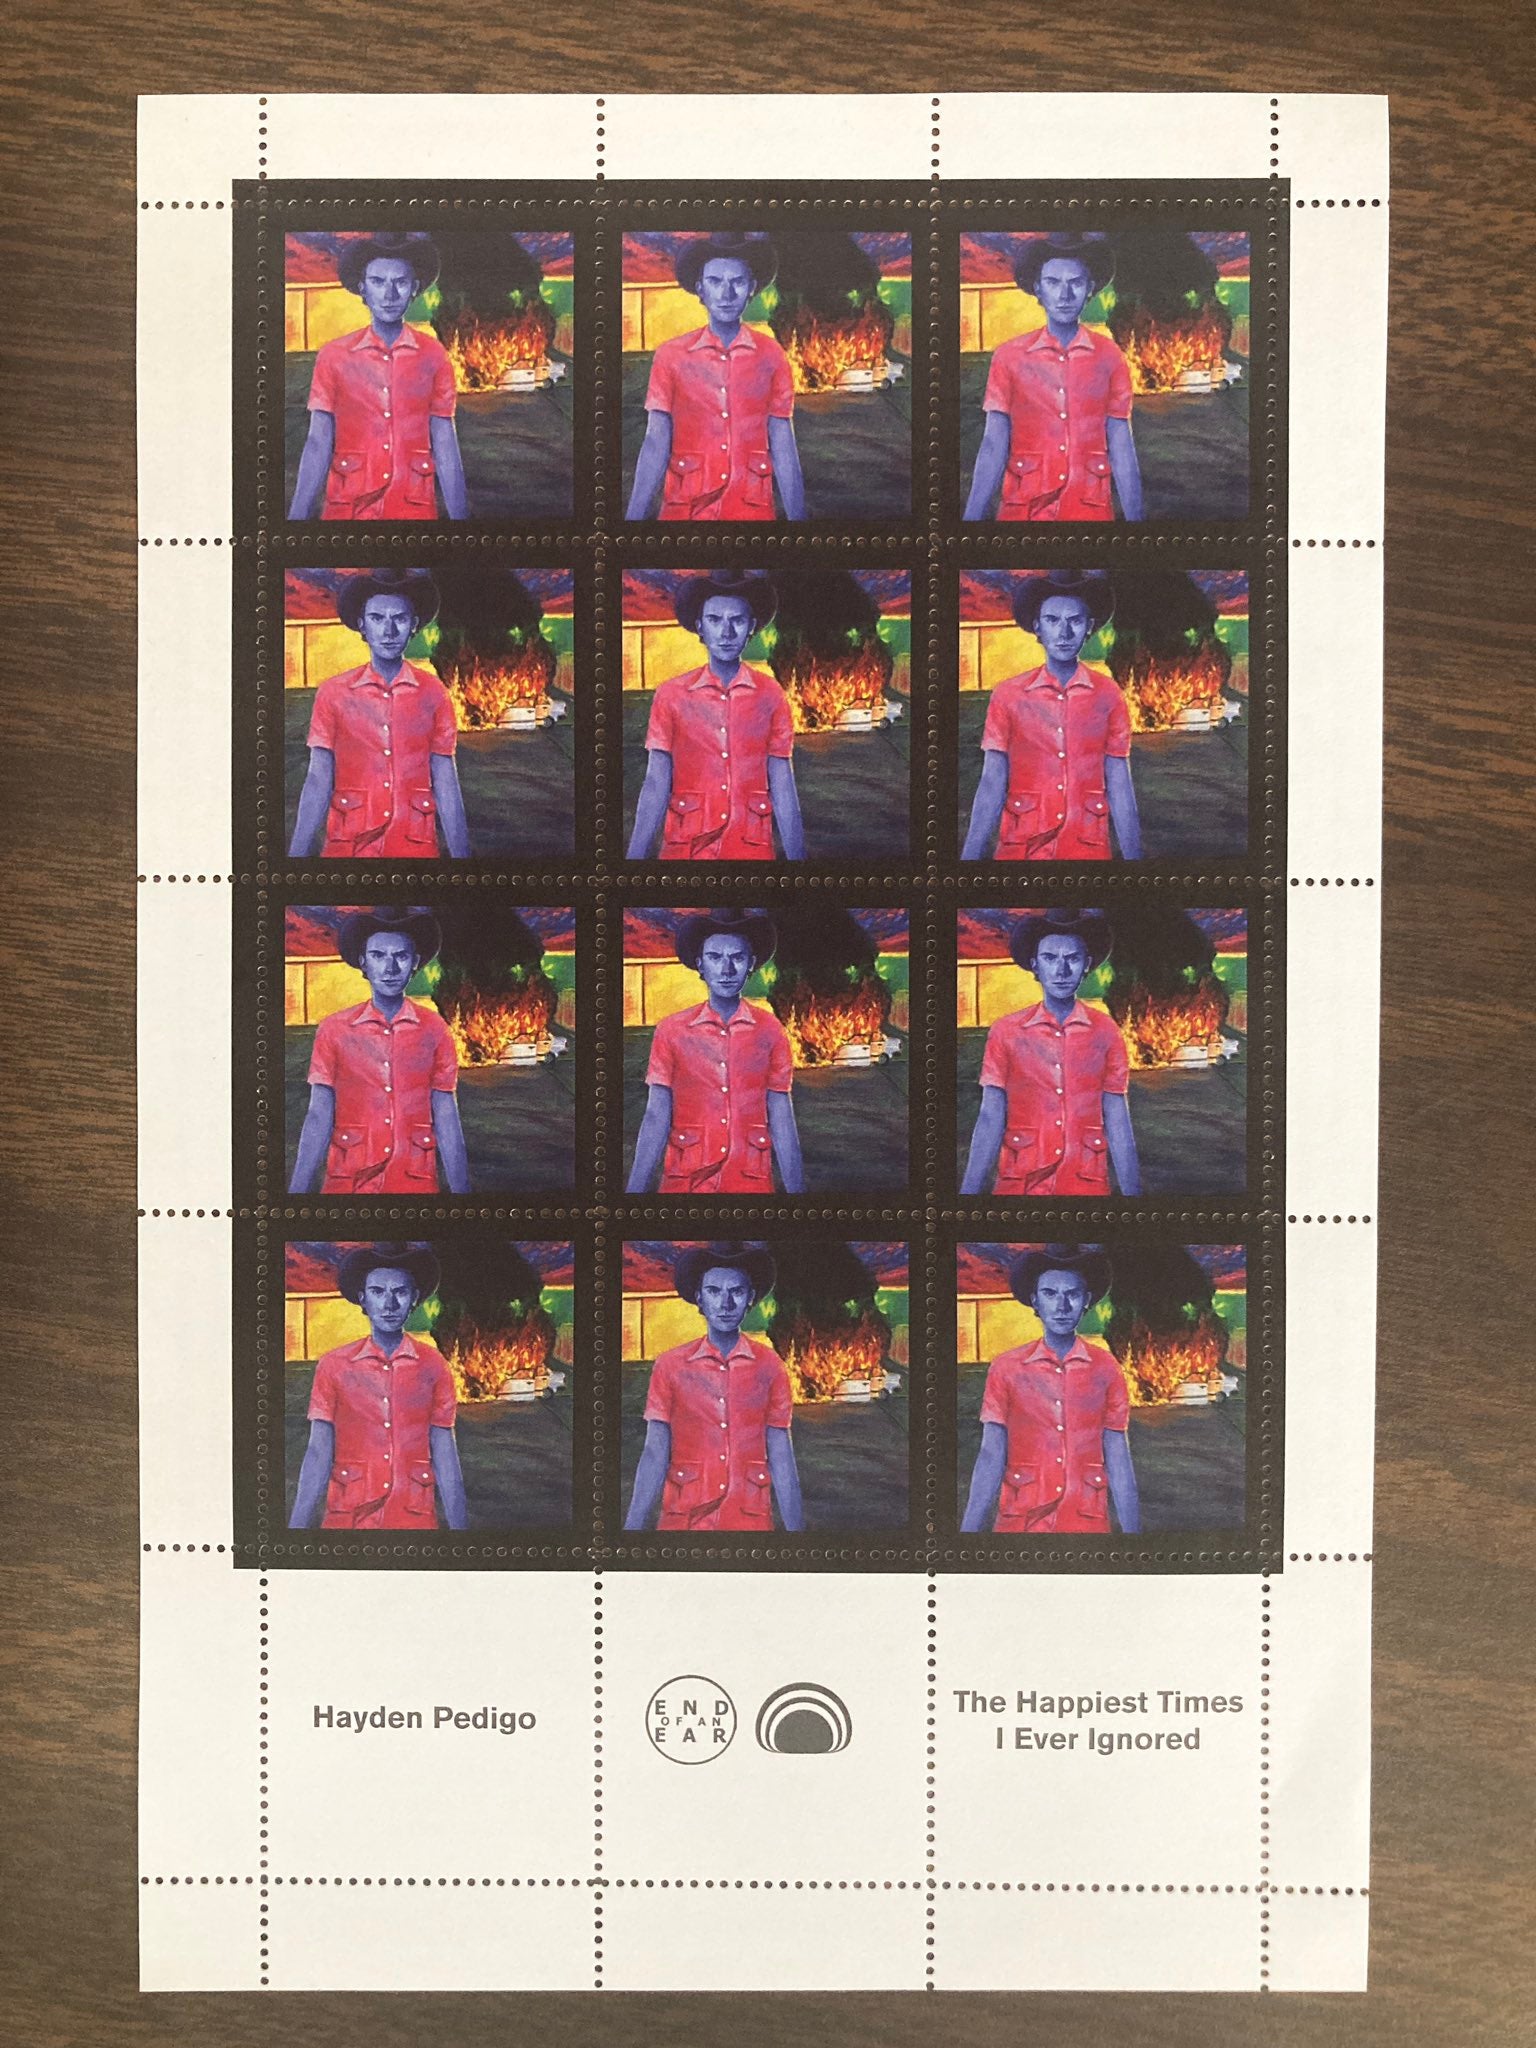 Hayden Pedigo Stamp Sheet